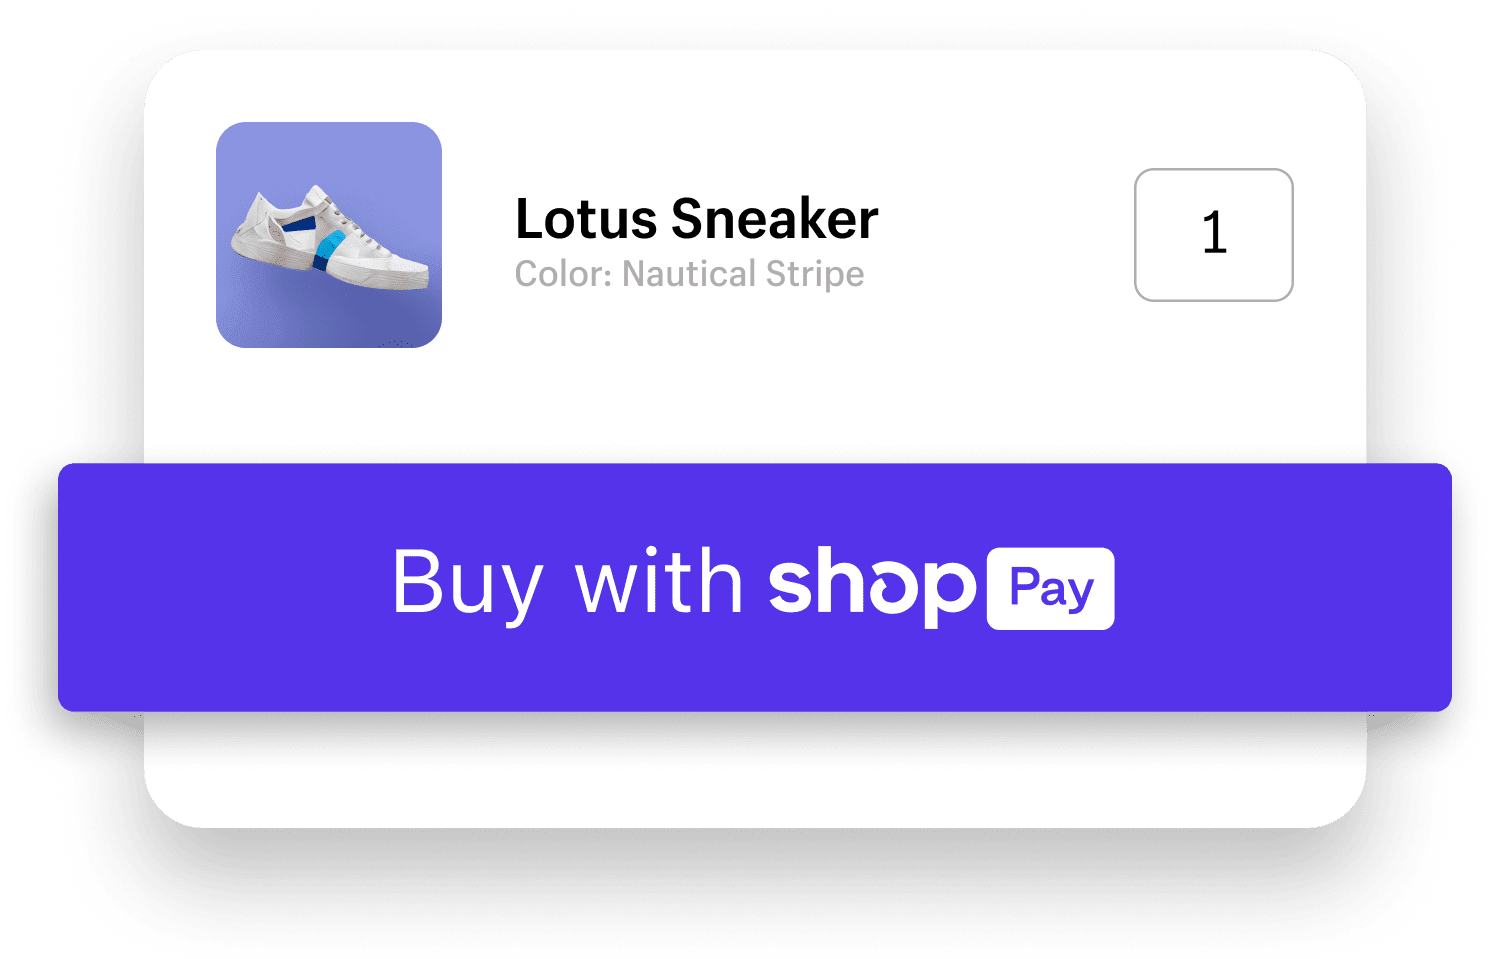 Køb med Shop Pays betalingsknap på mobil